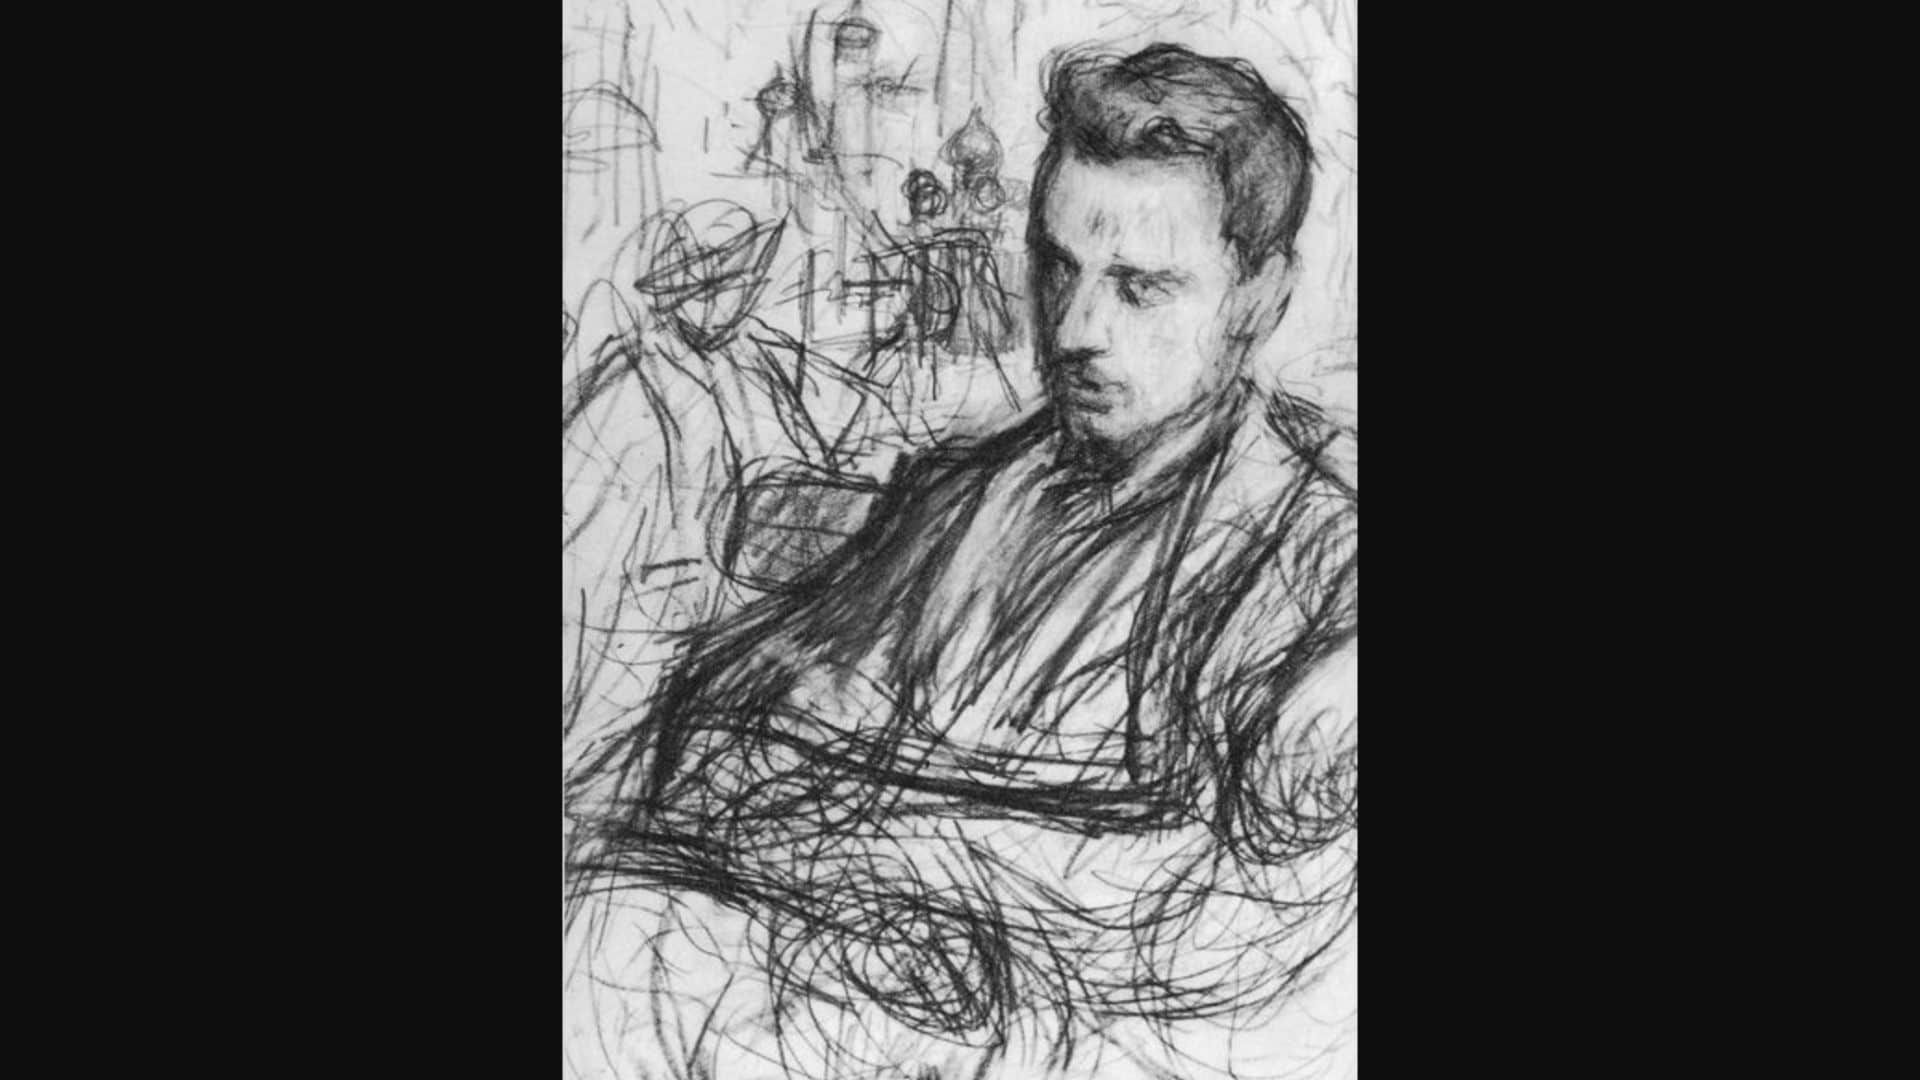 Райнер Мария Рильке, один из самых влиятельных поэтов-модернистов XX века (1875-1926). Рисунок Леонида Пастернака (1862-1945). (Общественное достояние)